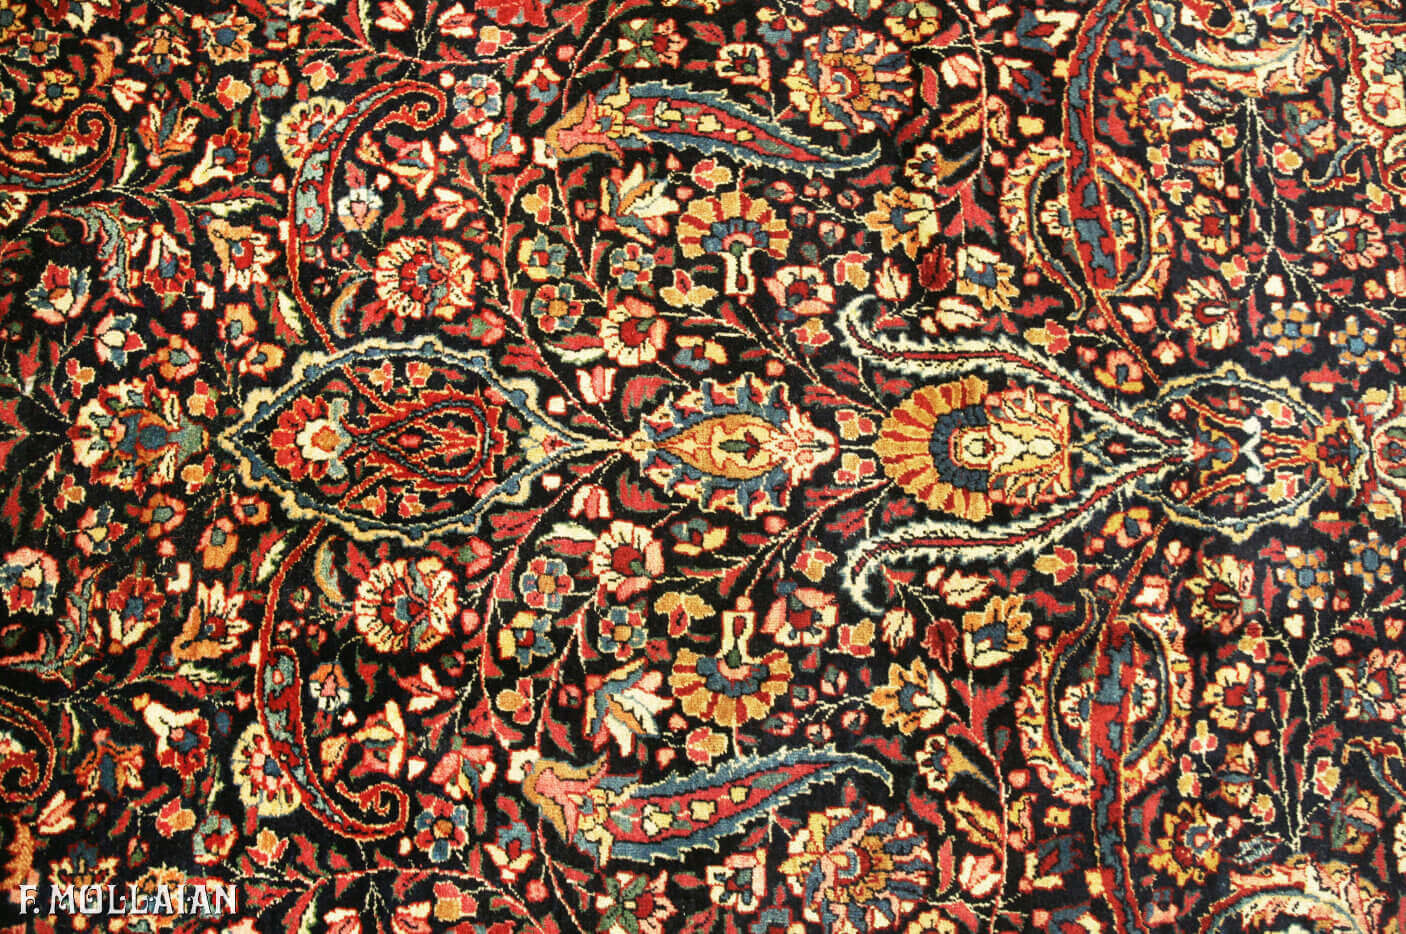 Antique Persian Mashad Amoghli Carpet n°:24222440